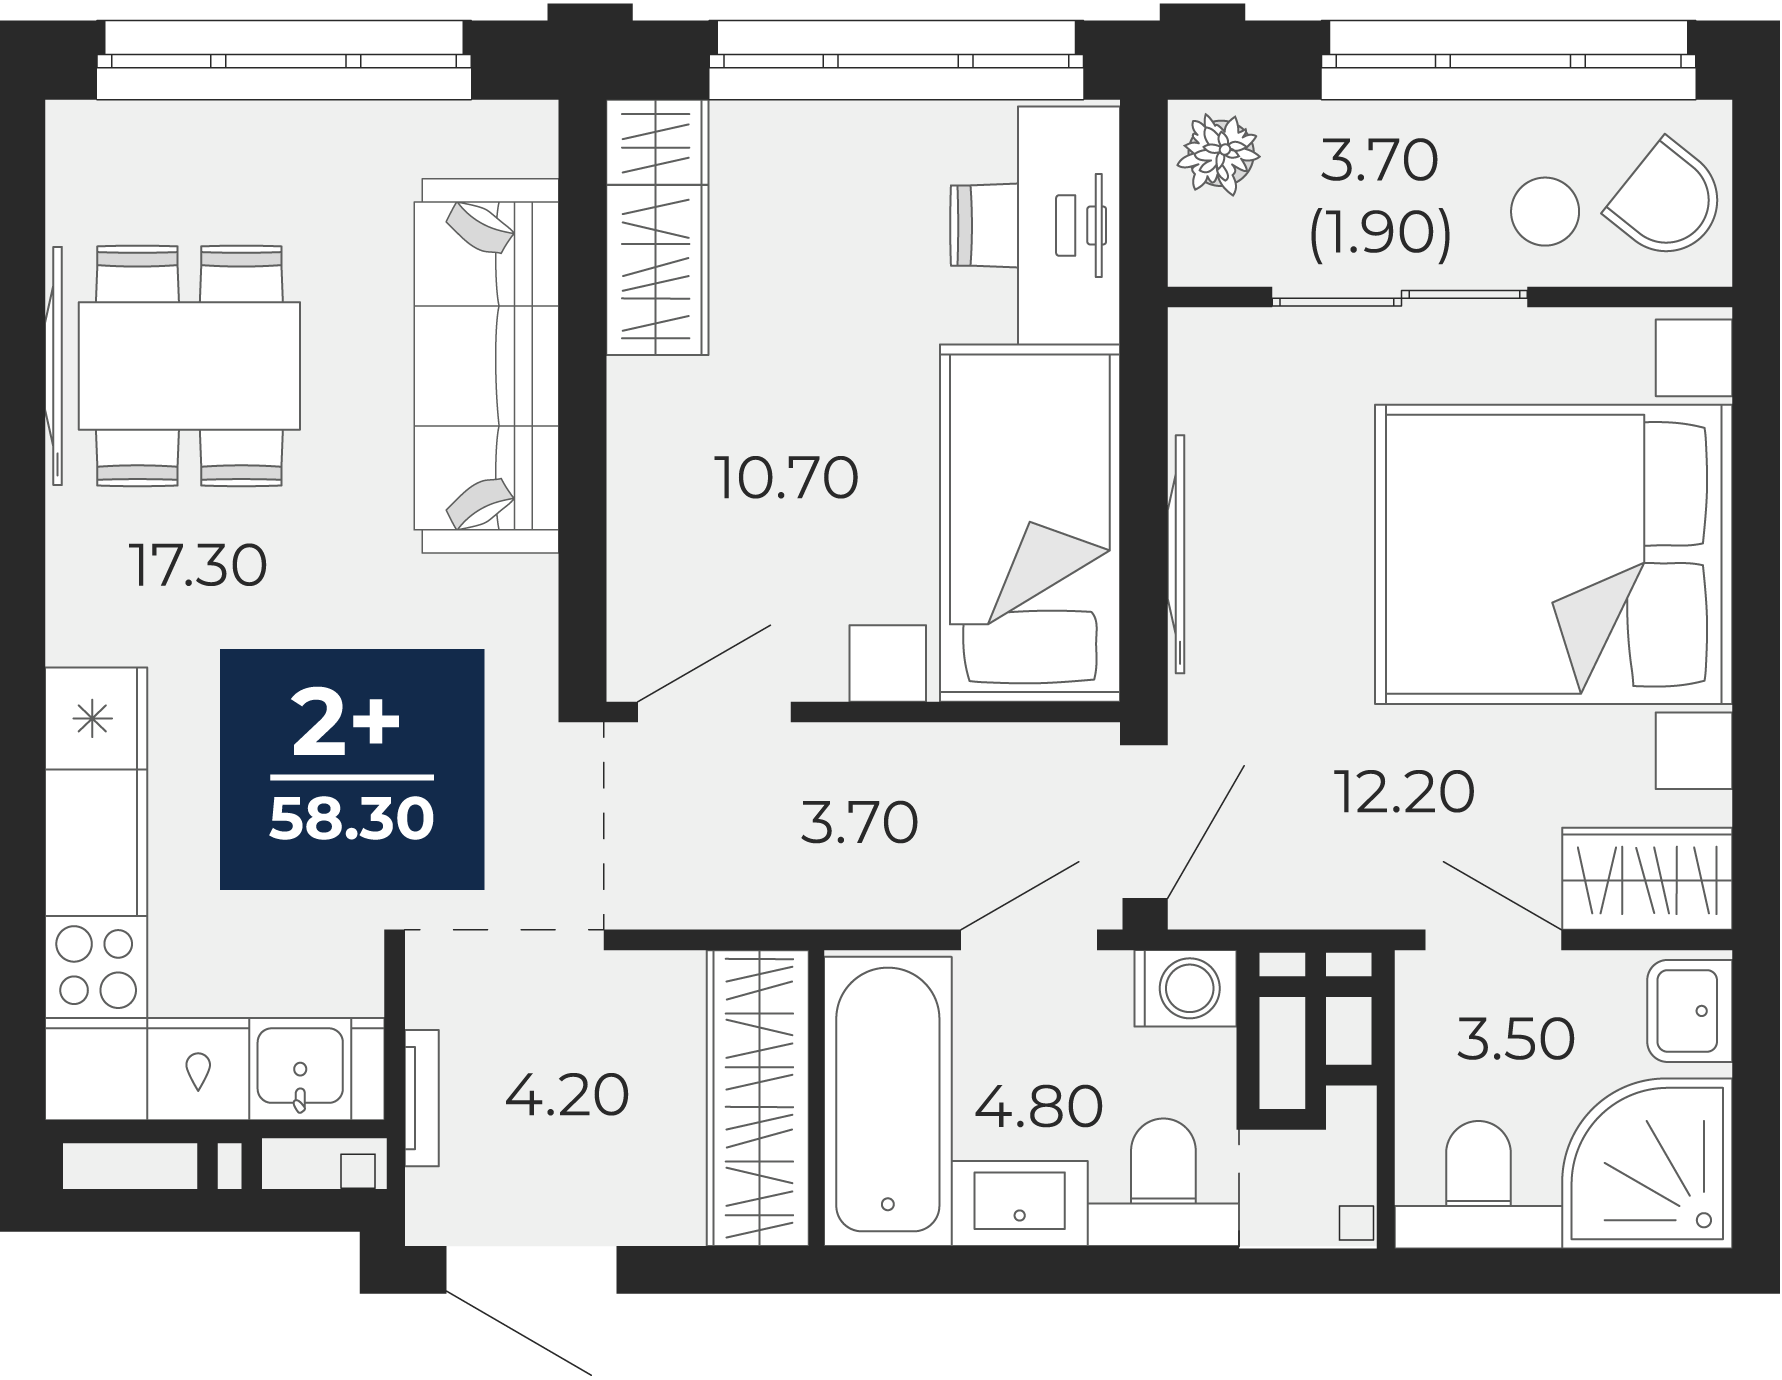 Квартира № 270, 2-комнатная, 58.3 кв. м, 4 этаж